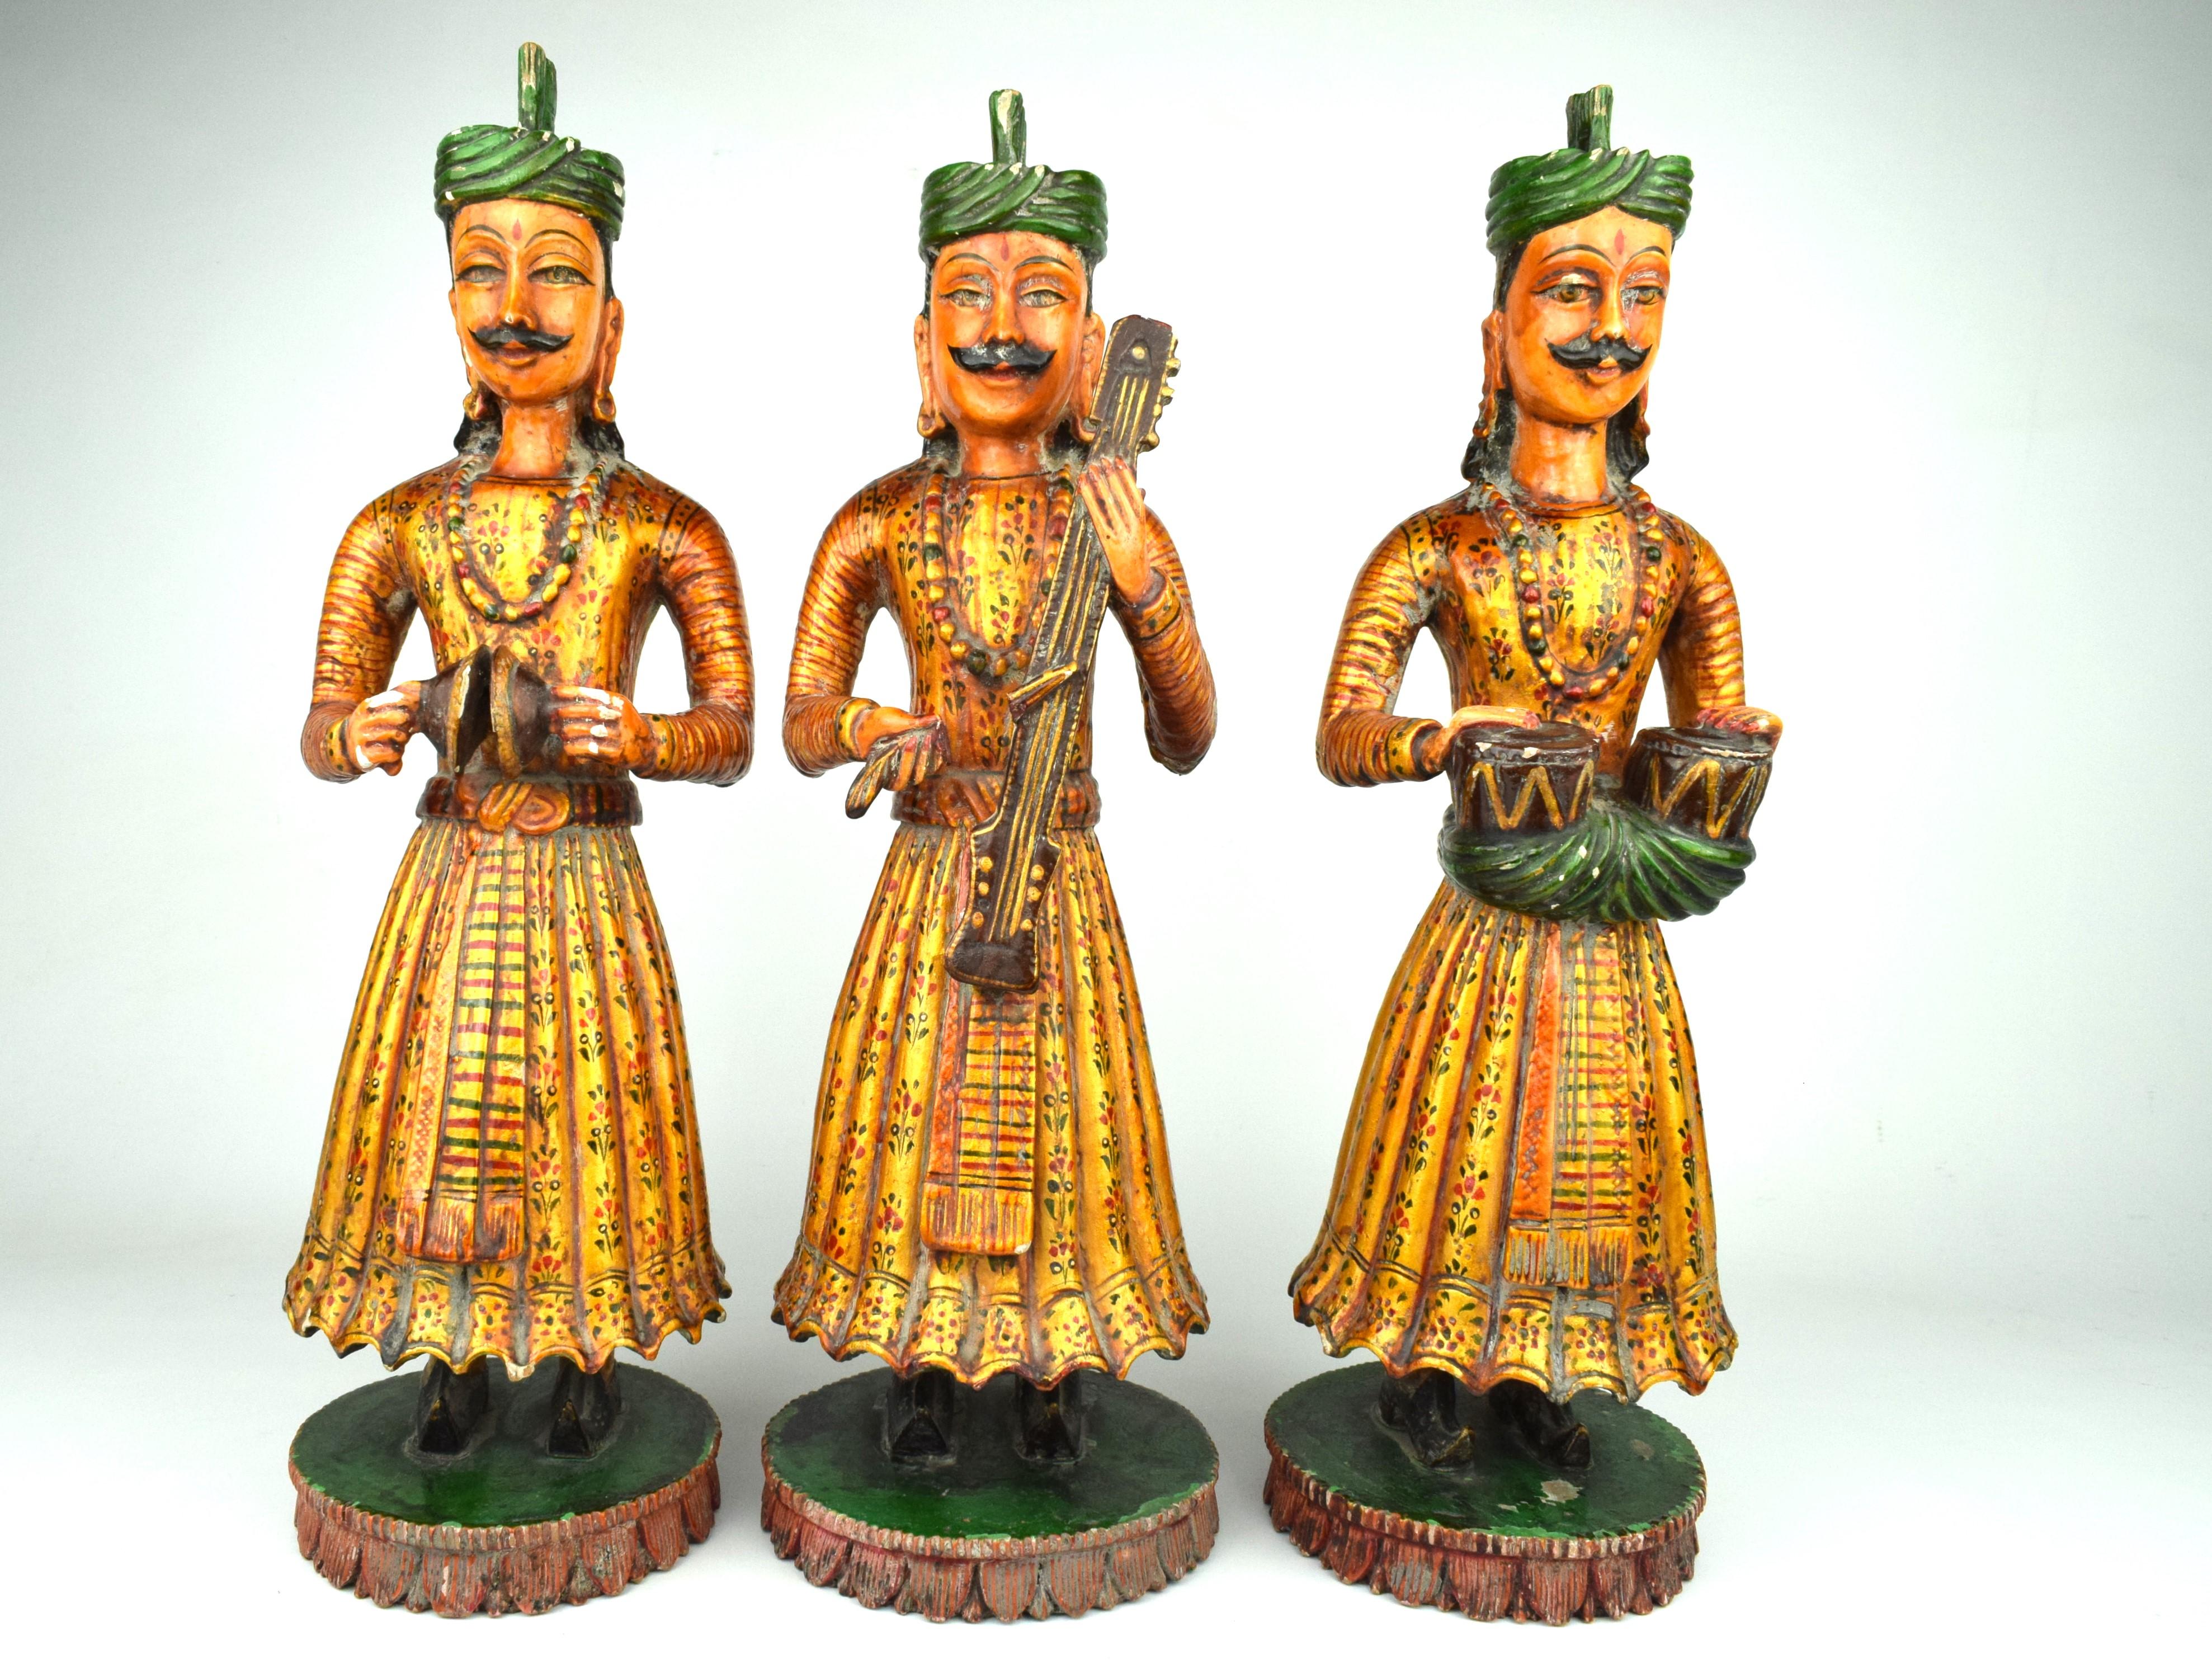 Ce groupe de trois figurines de musiciens en bois du Rajasthan est un exemple étonnant de l'artisanat traditionnel indien. Ces sculptures aux détails complexes et magnifiquement travaillés sont taillées à la main dans du bois, mettant en valeur les